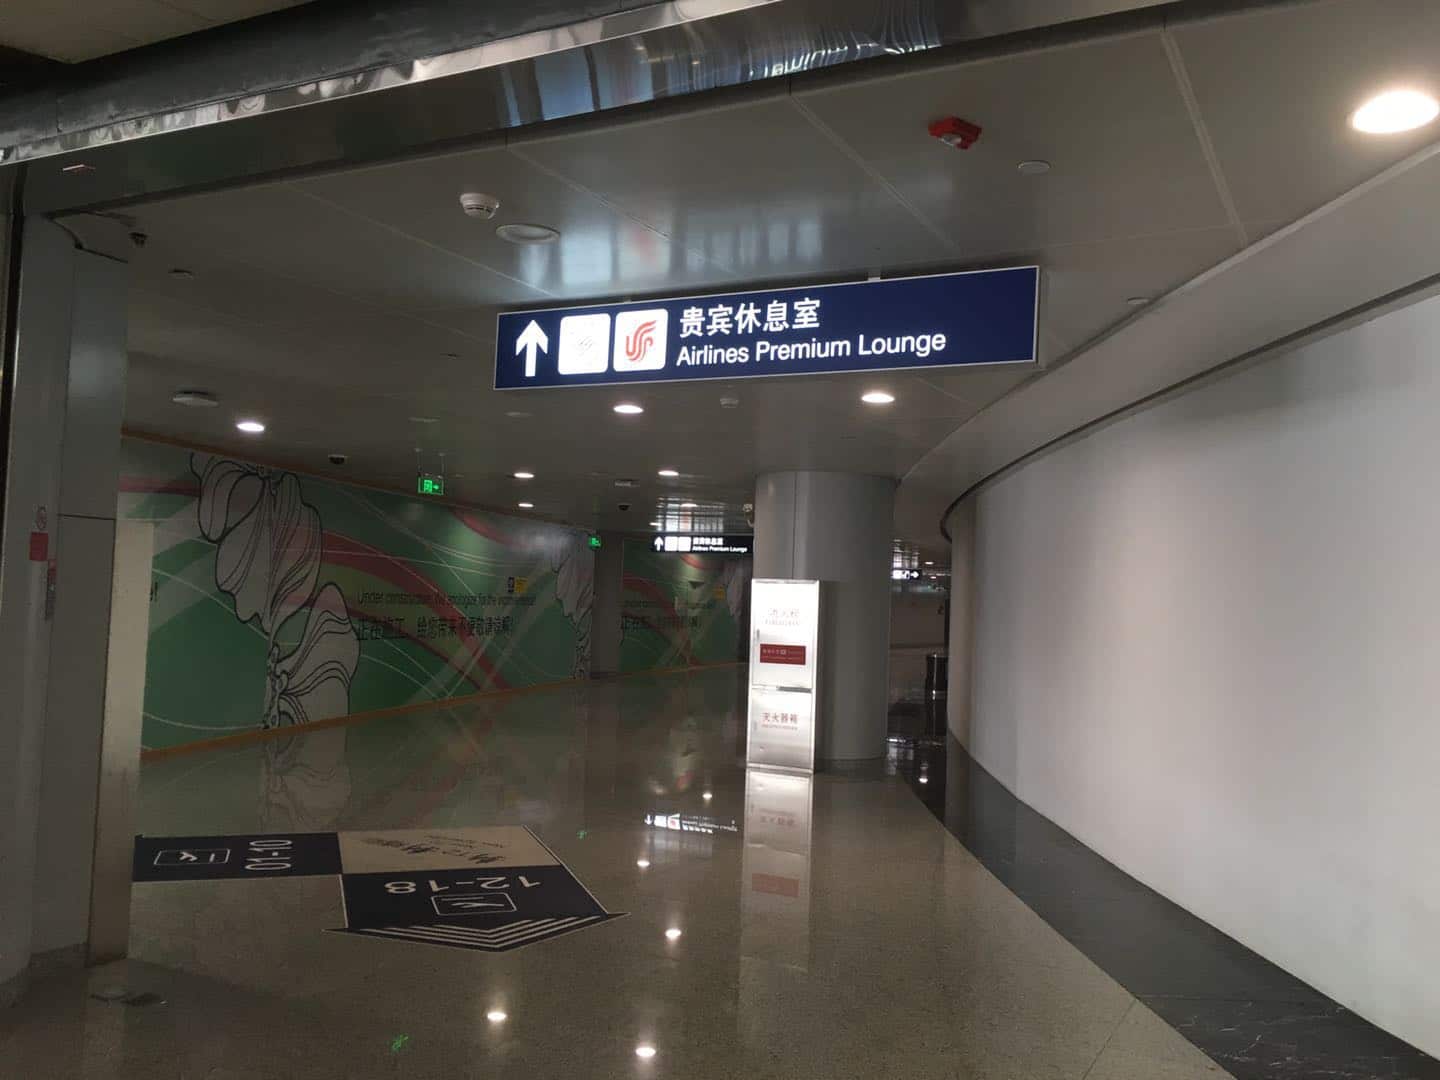 北京空港第2ターミナル スカイチームラウンジ